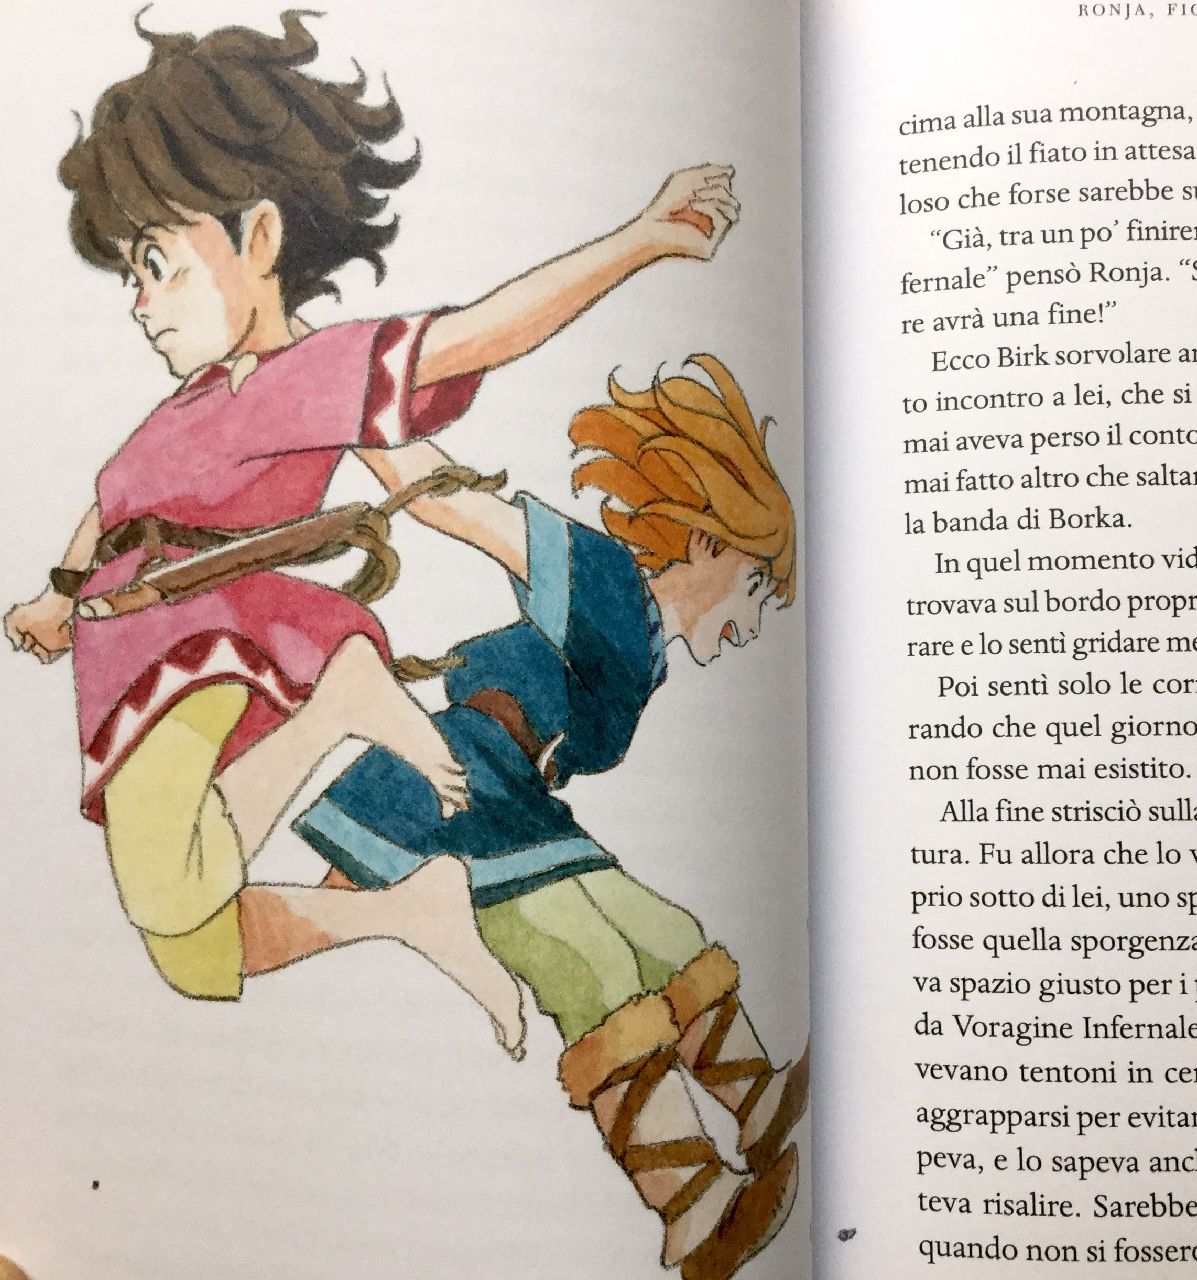 Astrid Lindgren - Katsuya Kondo, Ronja, Mondadori